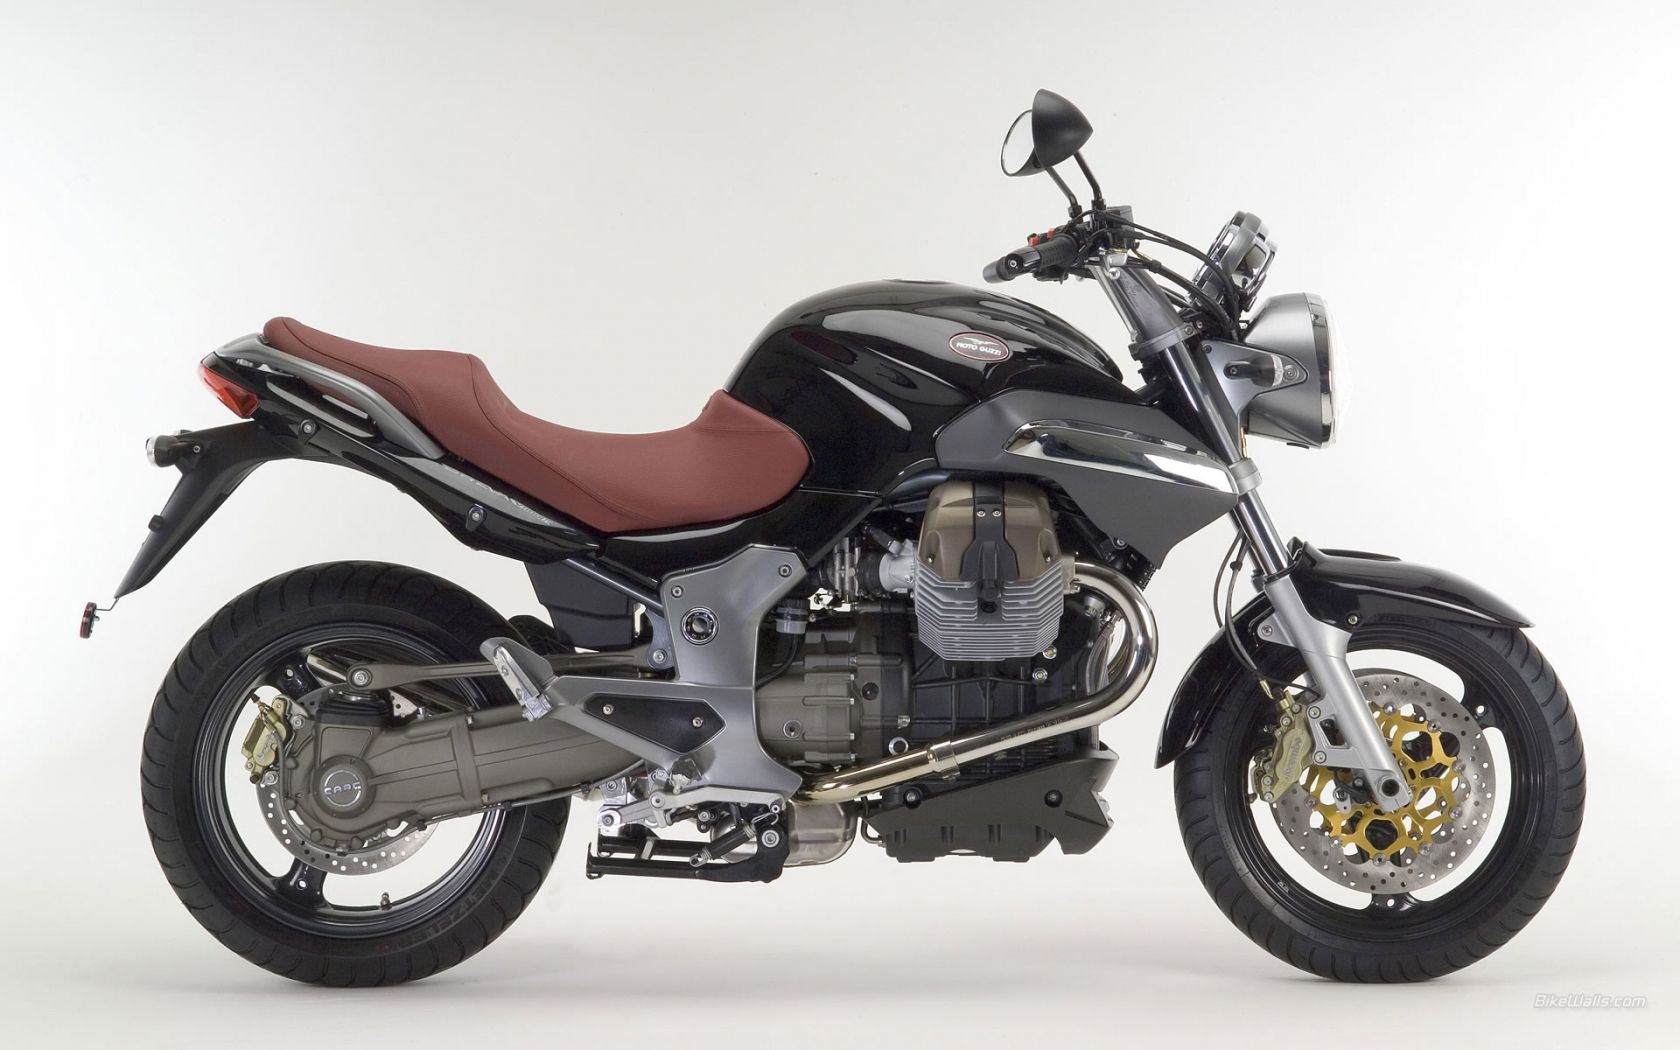 2012 Moto Guzzi Breva 1100